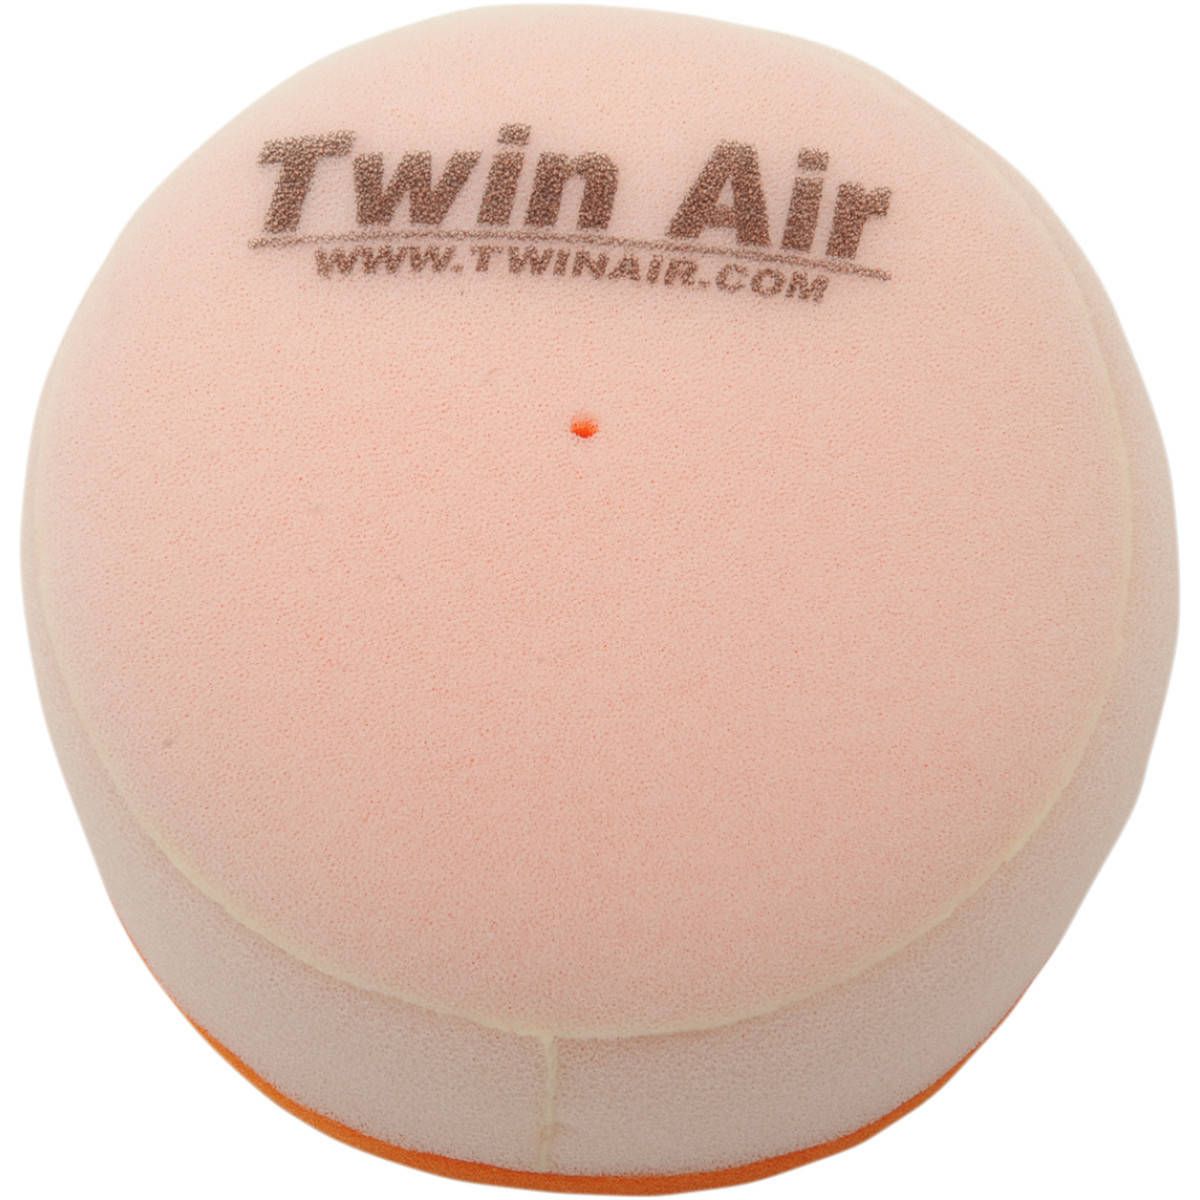 Twin Air Air Filter 151109